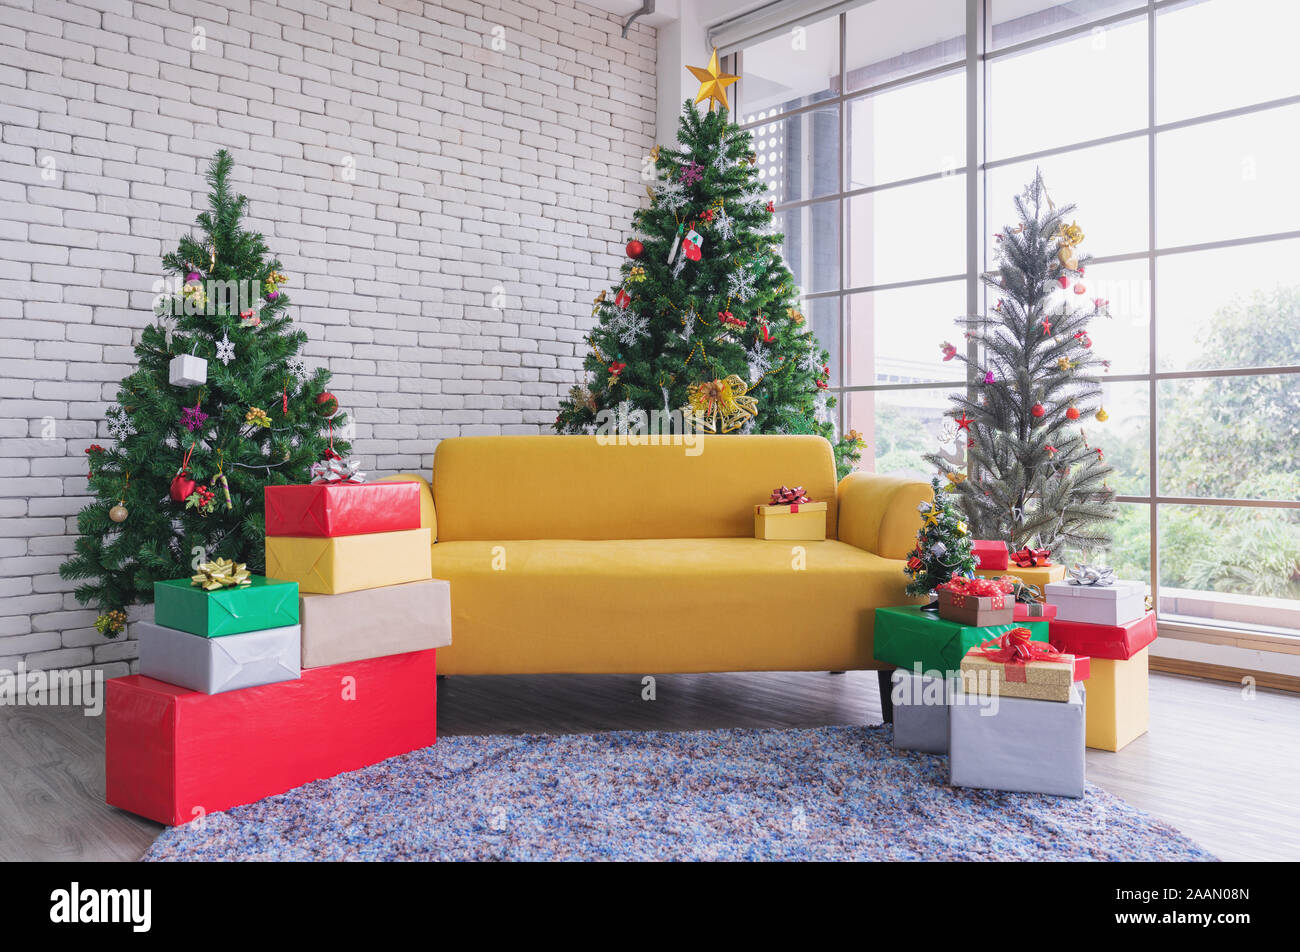 Christmas living room, Yellow sofa with Christmas trees and Christmas  decorations Stock Photo - Alamy